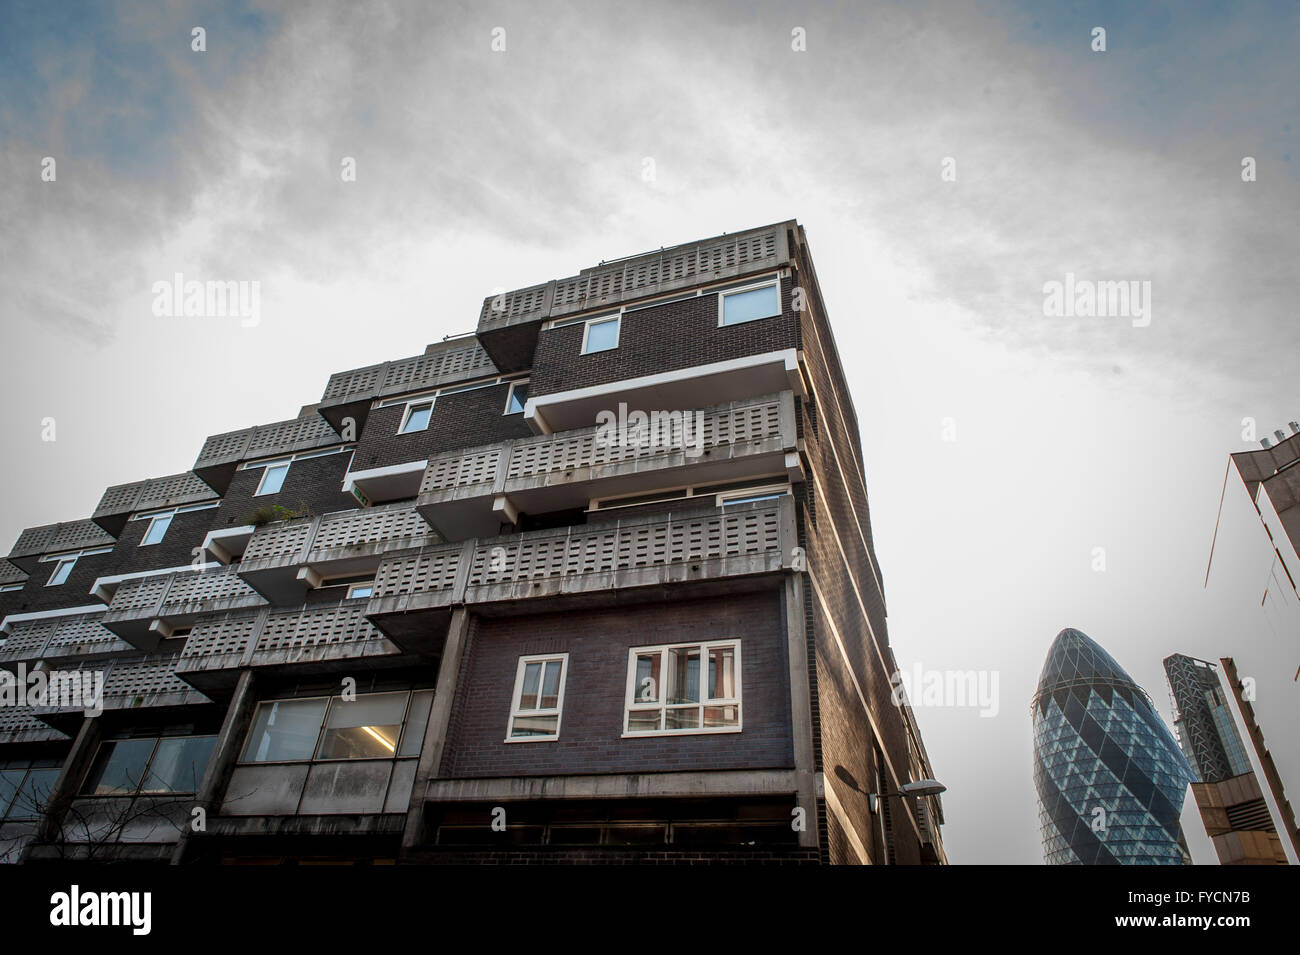 Eine Wohnsiedlung auf der Petticoat Lane in East London mit dem Gherkin im Hintergrund, der Alt und Neu kontrastiert. Stockfoto